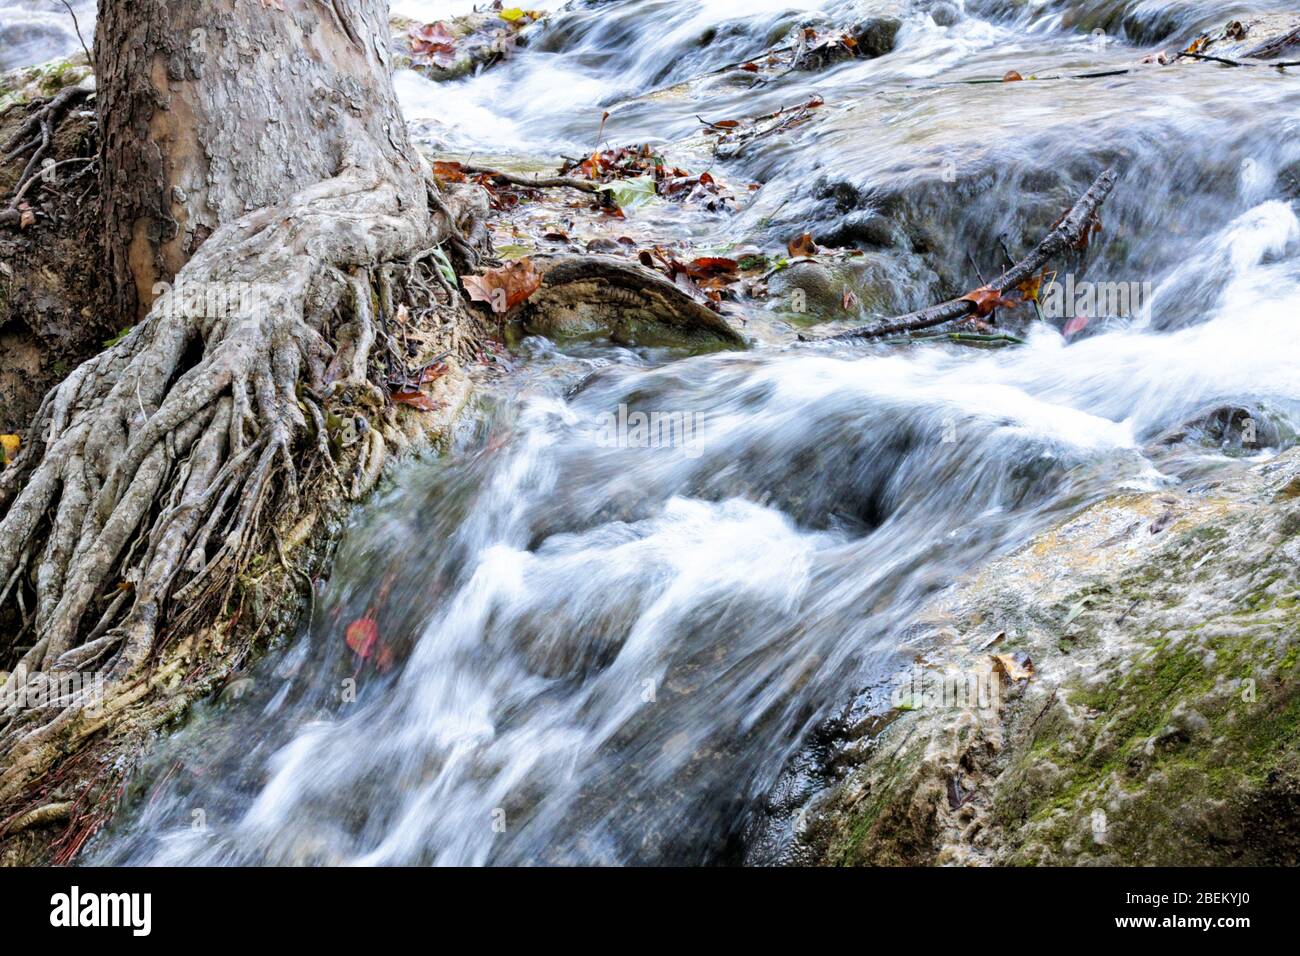 L'acqua delle cascate Little Niagra in Sulphur Oklahoma scorre oltre un tronco d'albero con radici che raggiungono l'acqua. Foto Stock